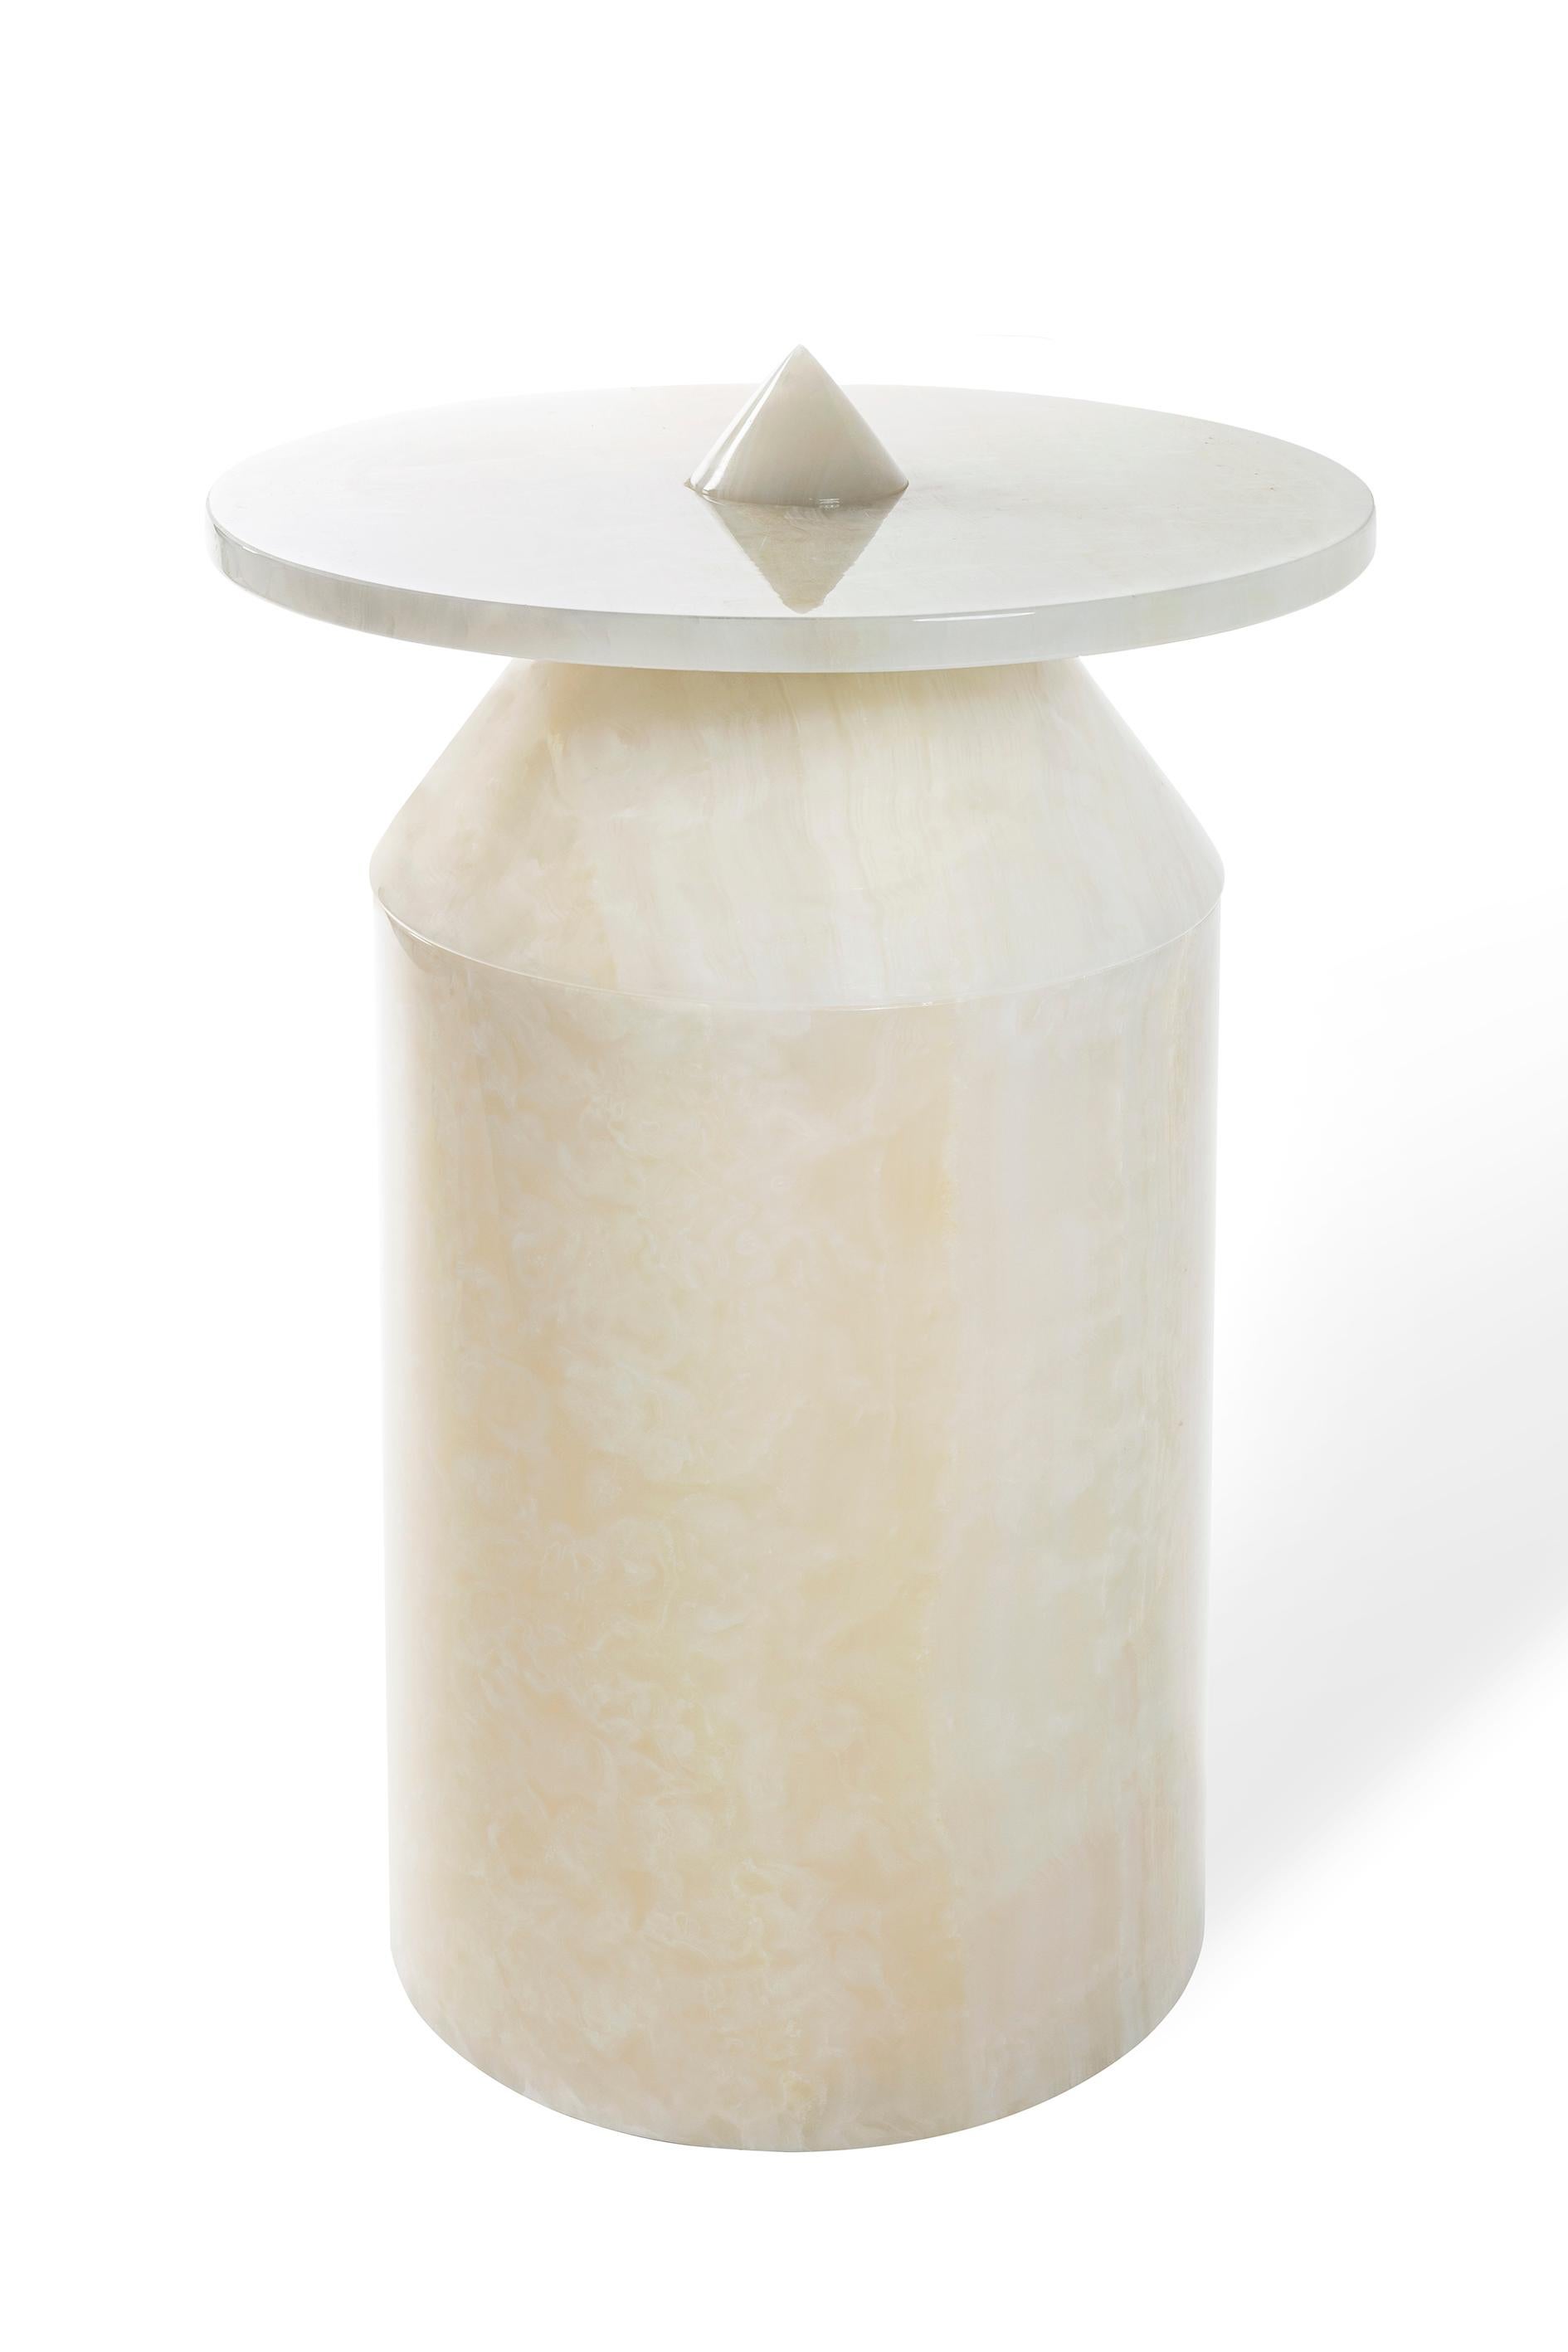 Italian New Modern Side Table in White Onyx, creator Karen Chekerdjian For Sale